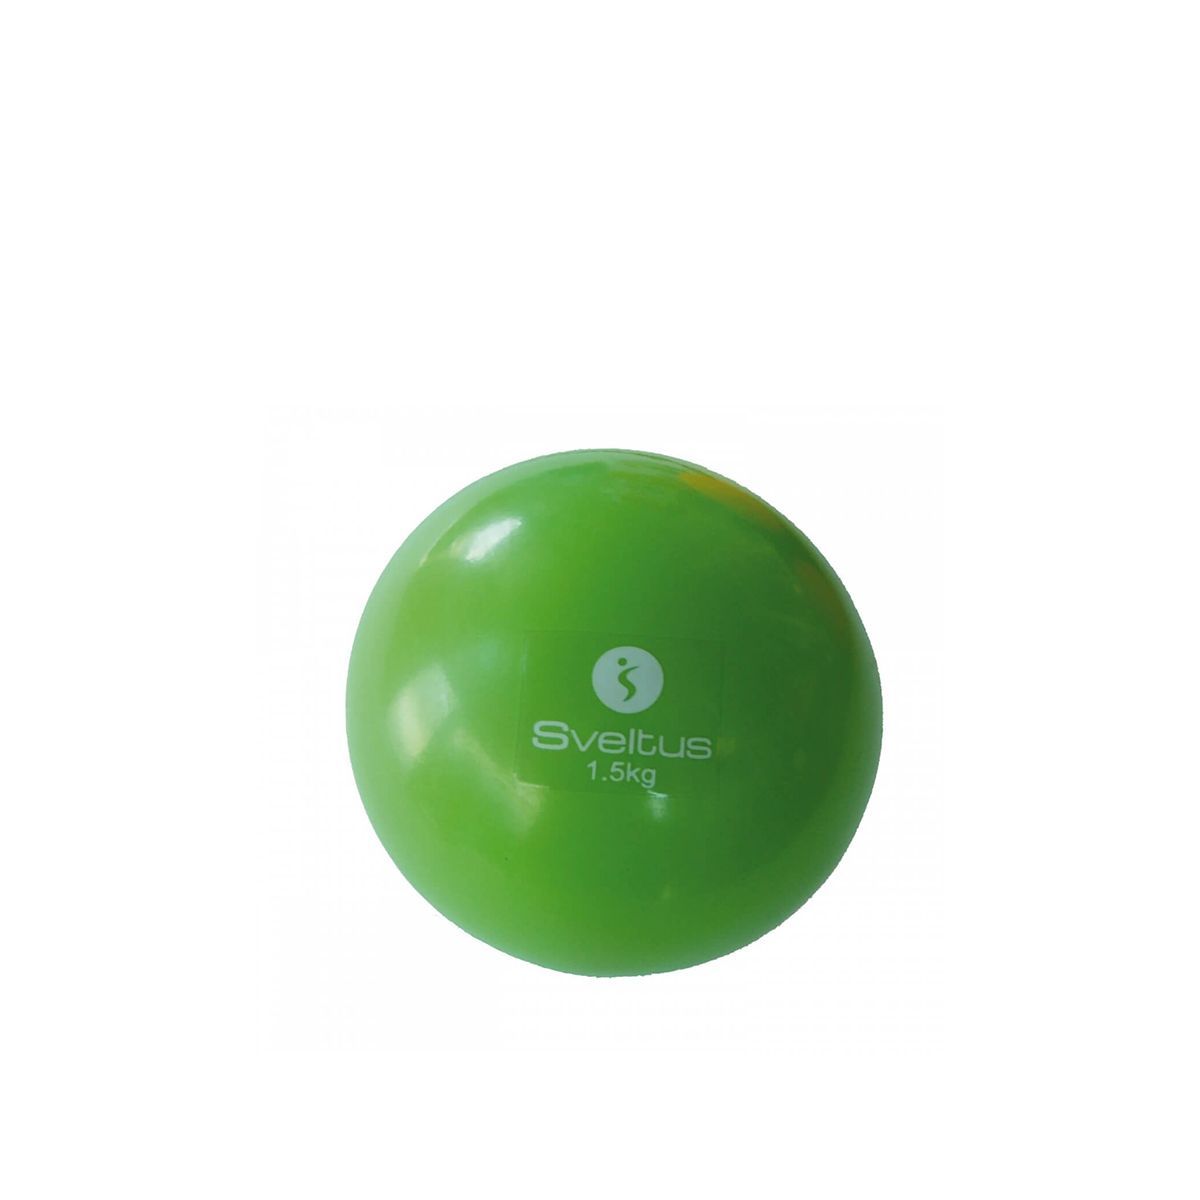 Sveltus weighted ball - súlylabda - 1.5kg